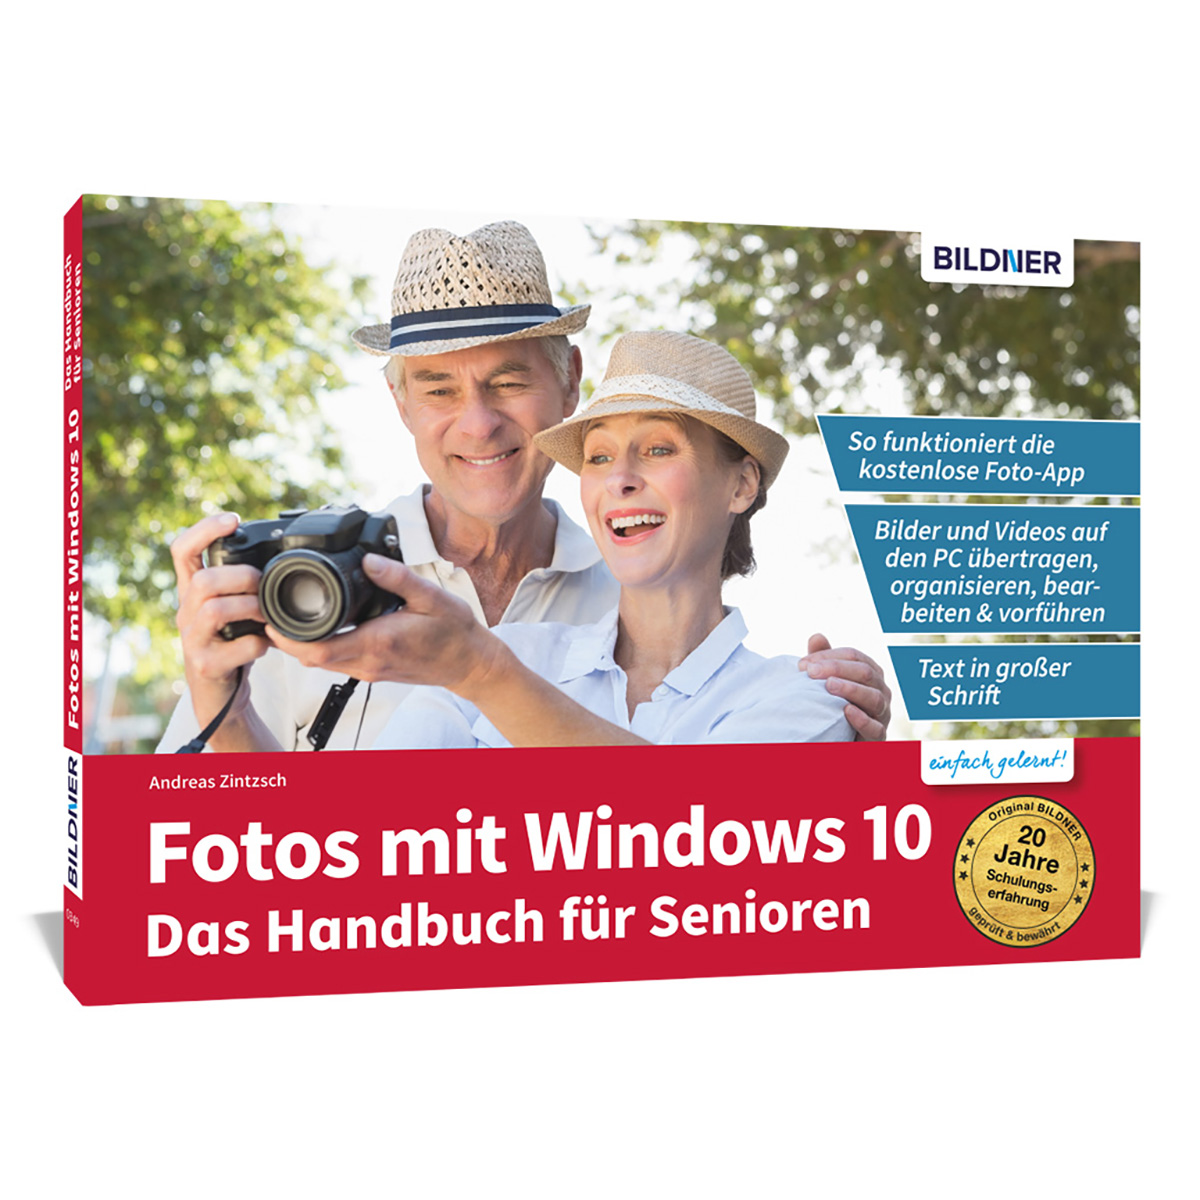 Fotos Handbuch 10 Senioren: mit bearbeiten - organisieren für und Das Fotos Videos und Windows